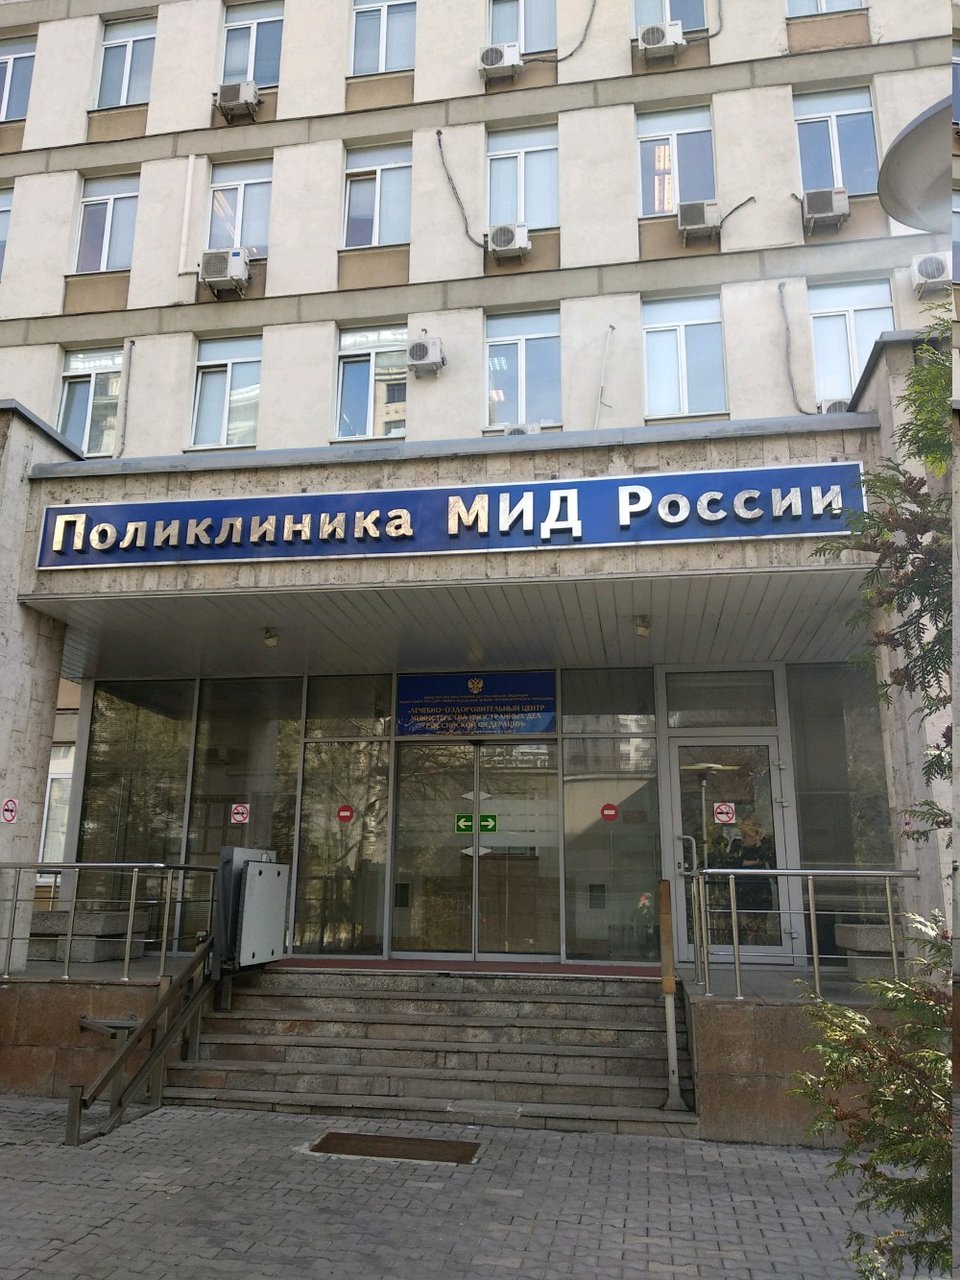 Поликлиника МИД России